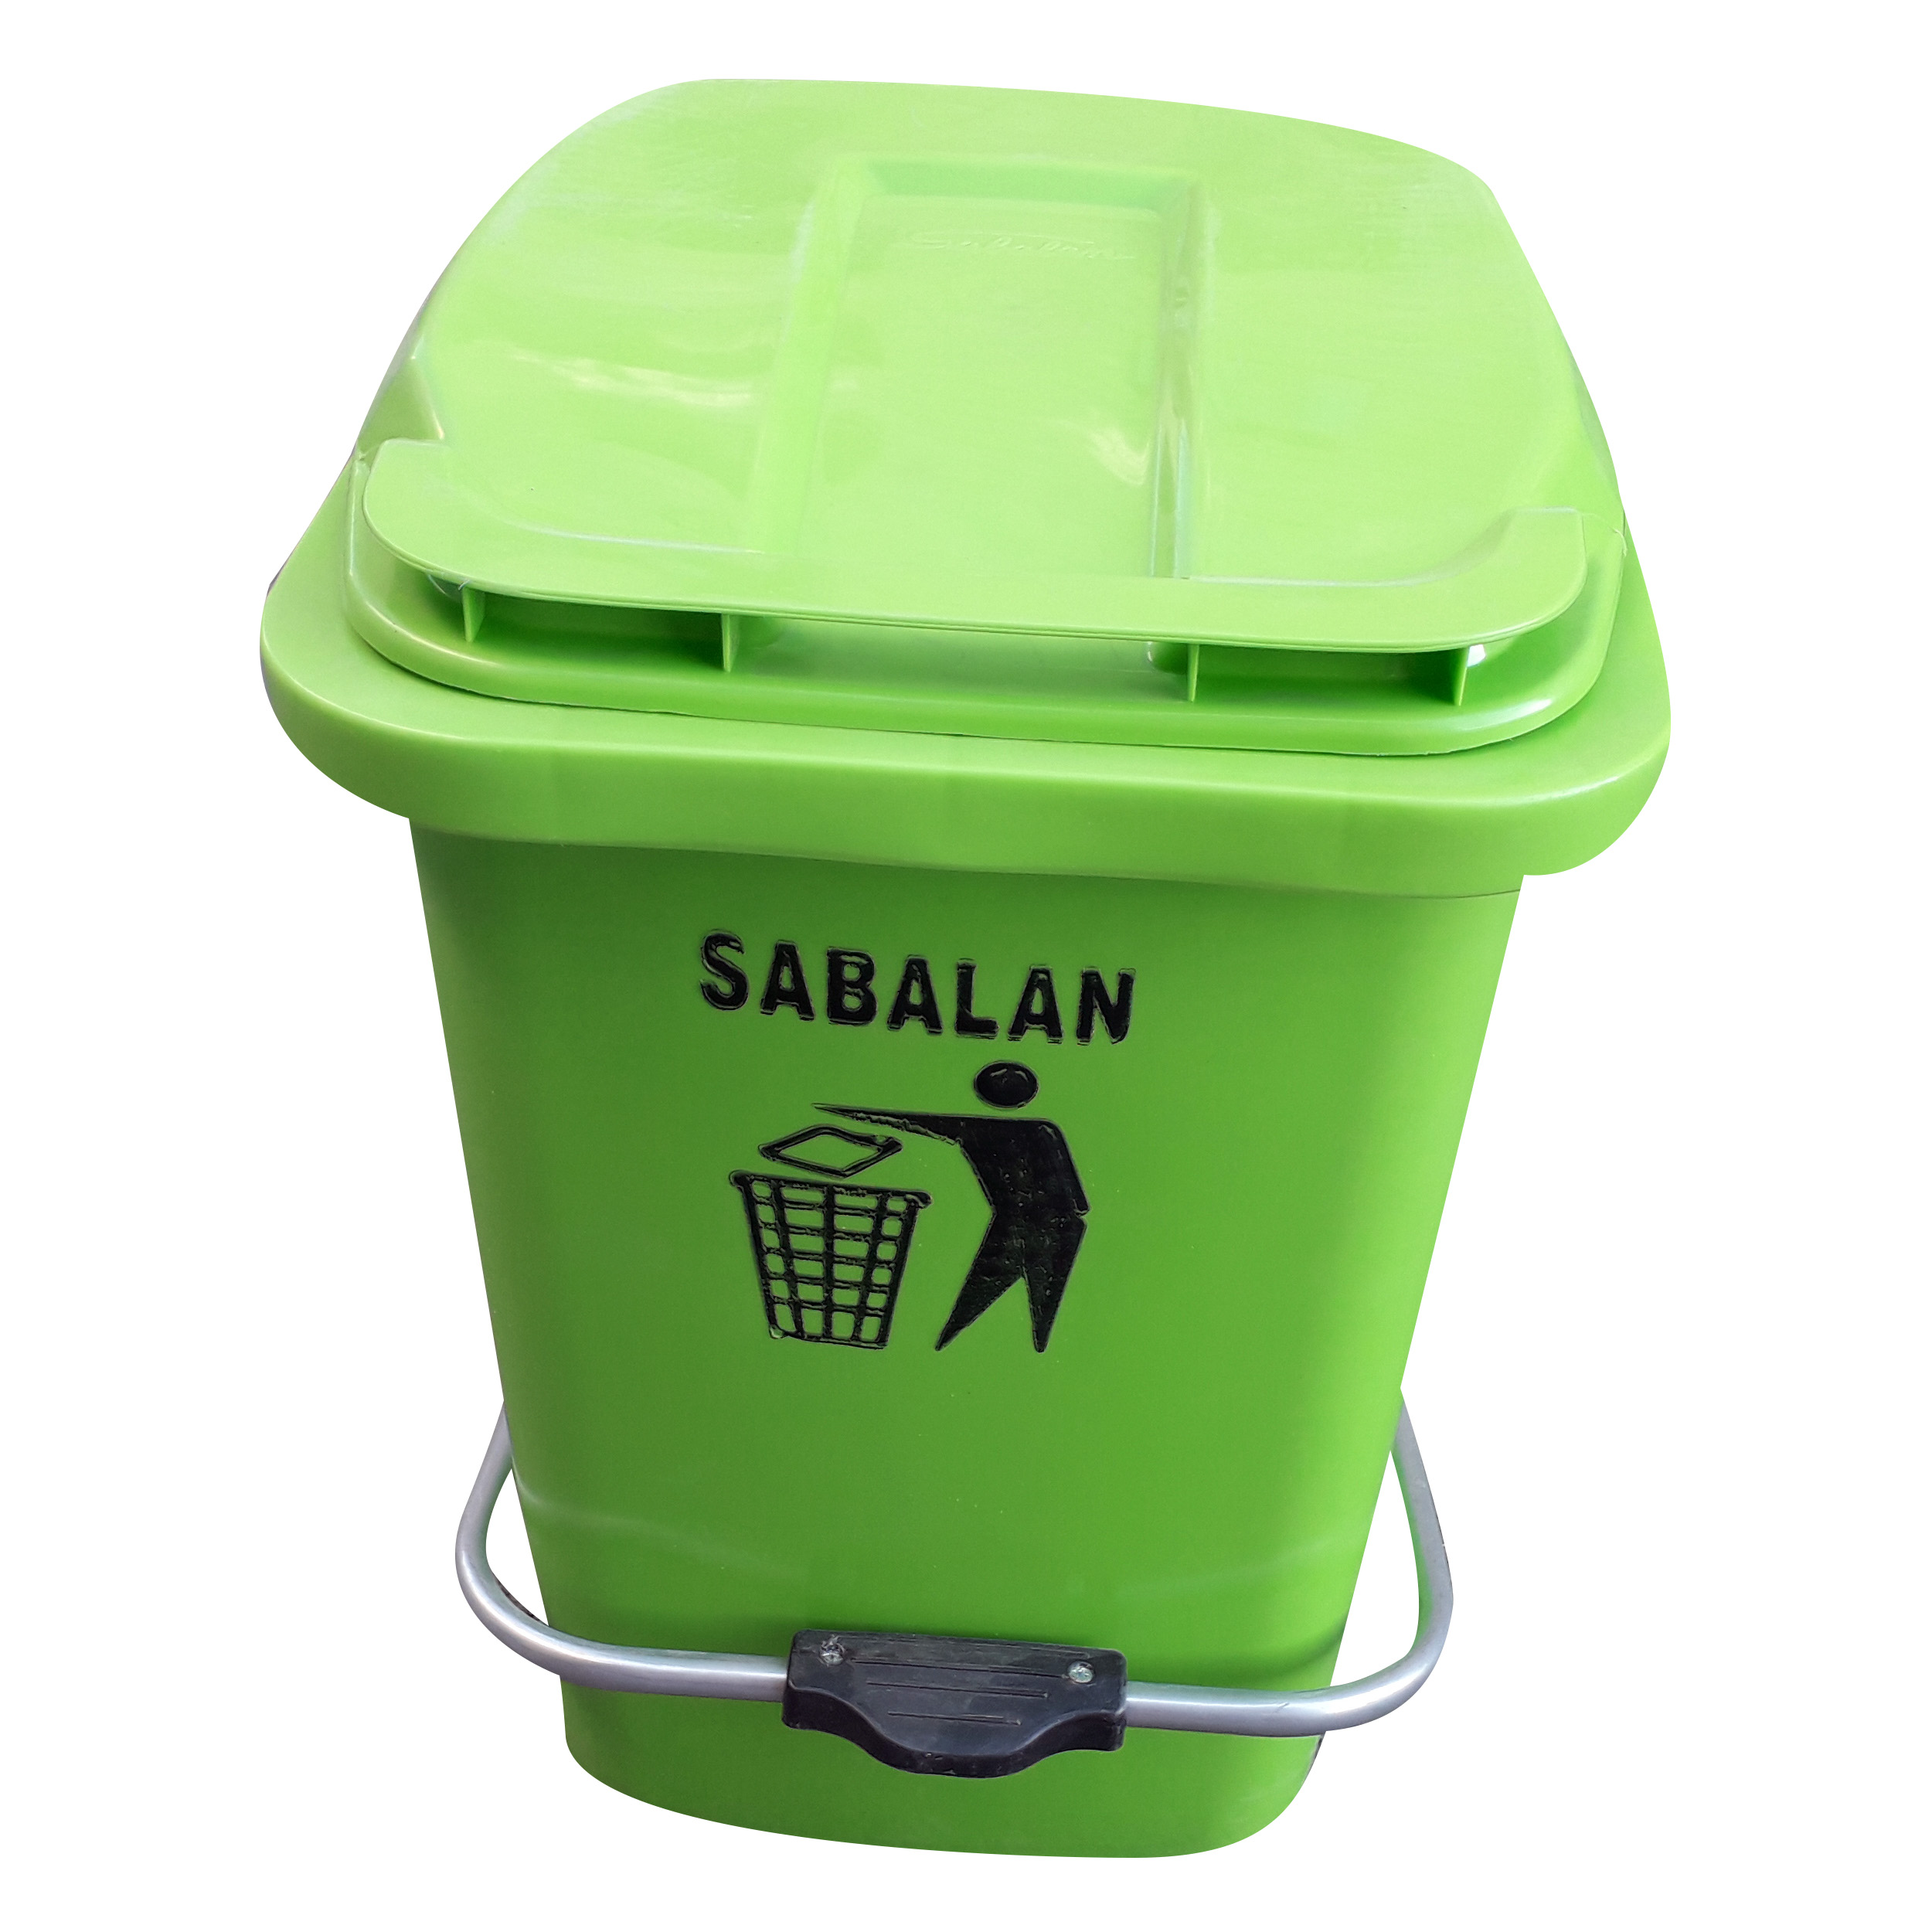 سطل زباله مدل سبلان